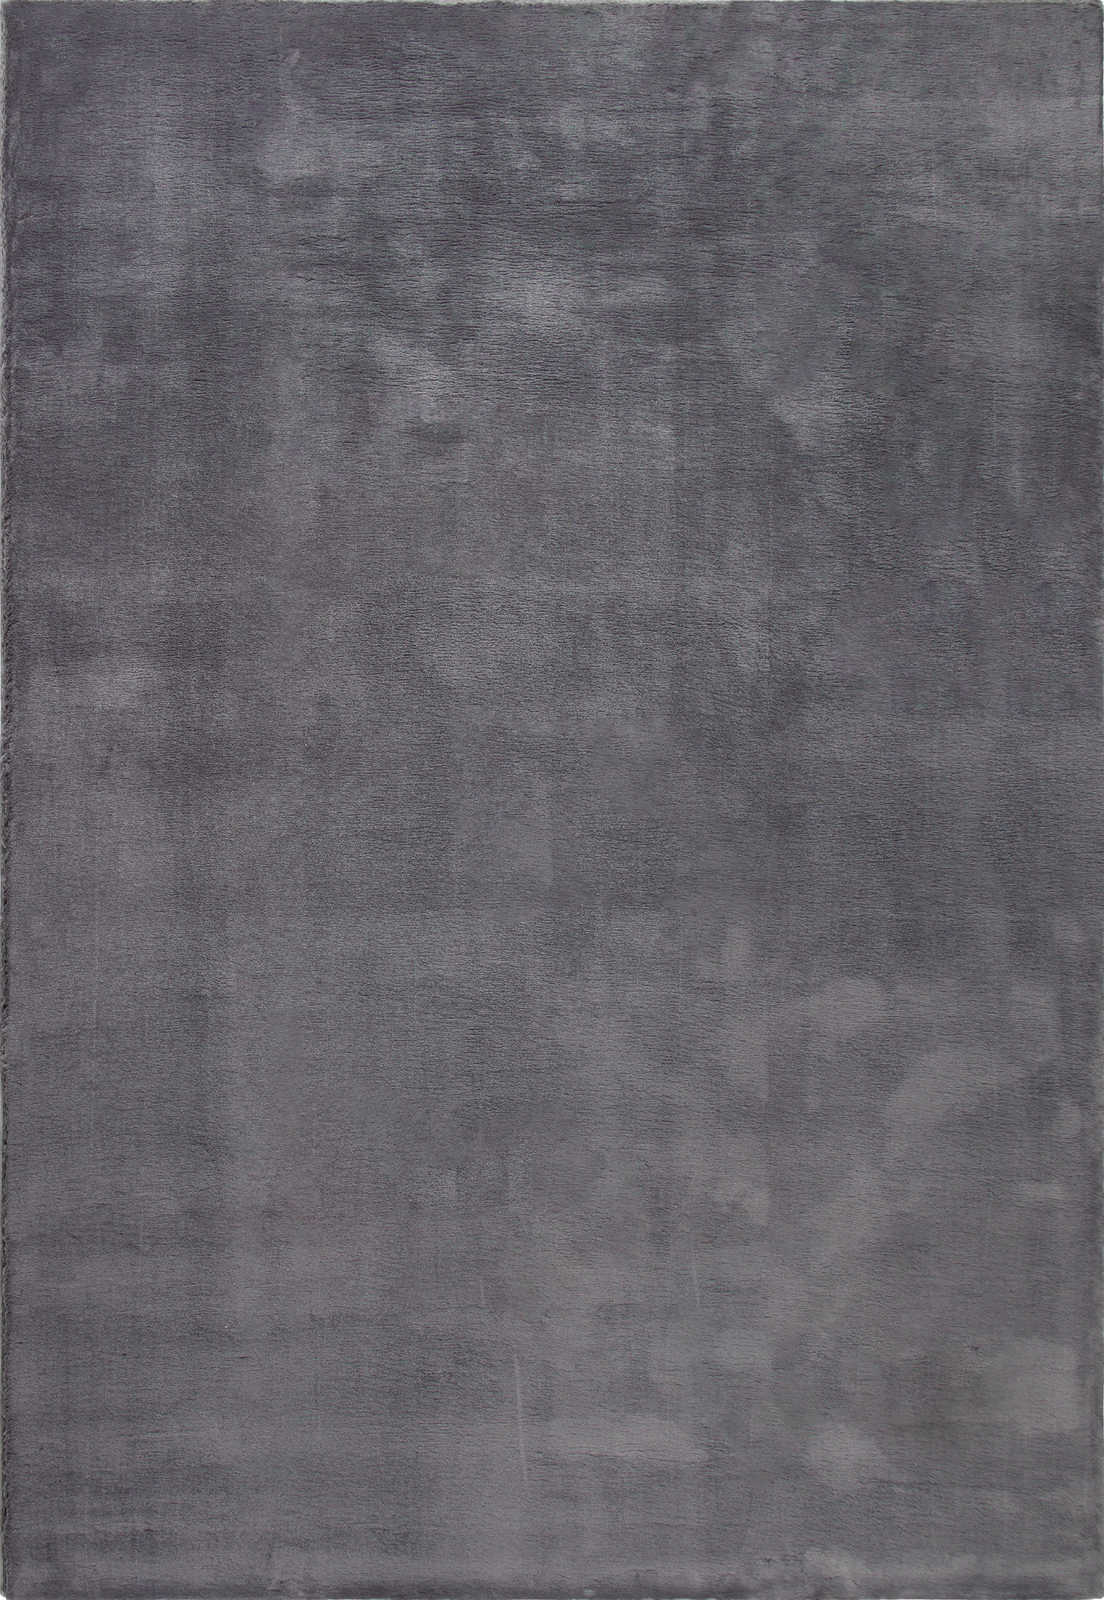             Moderner Hochflor Teppich in Anthrazit – 170 x 120 cm
        